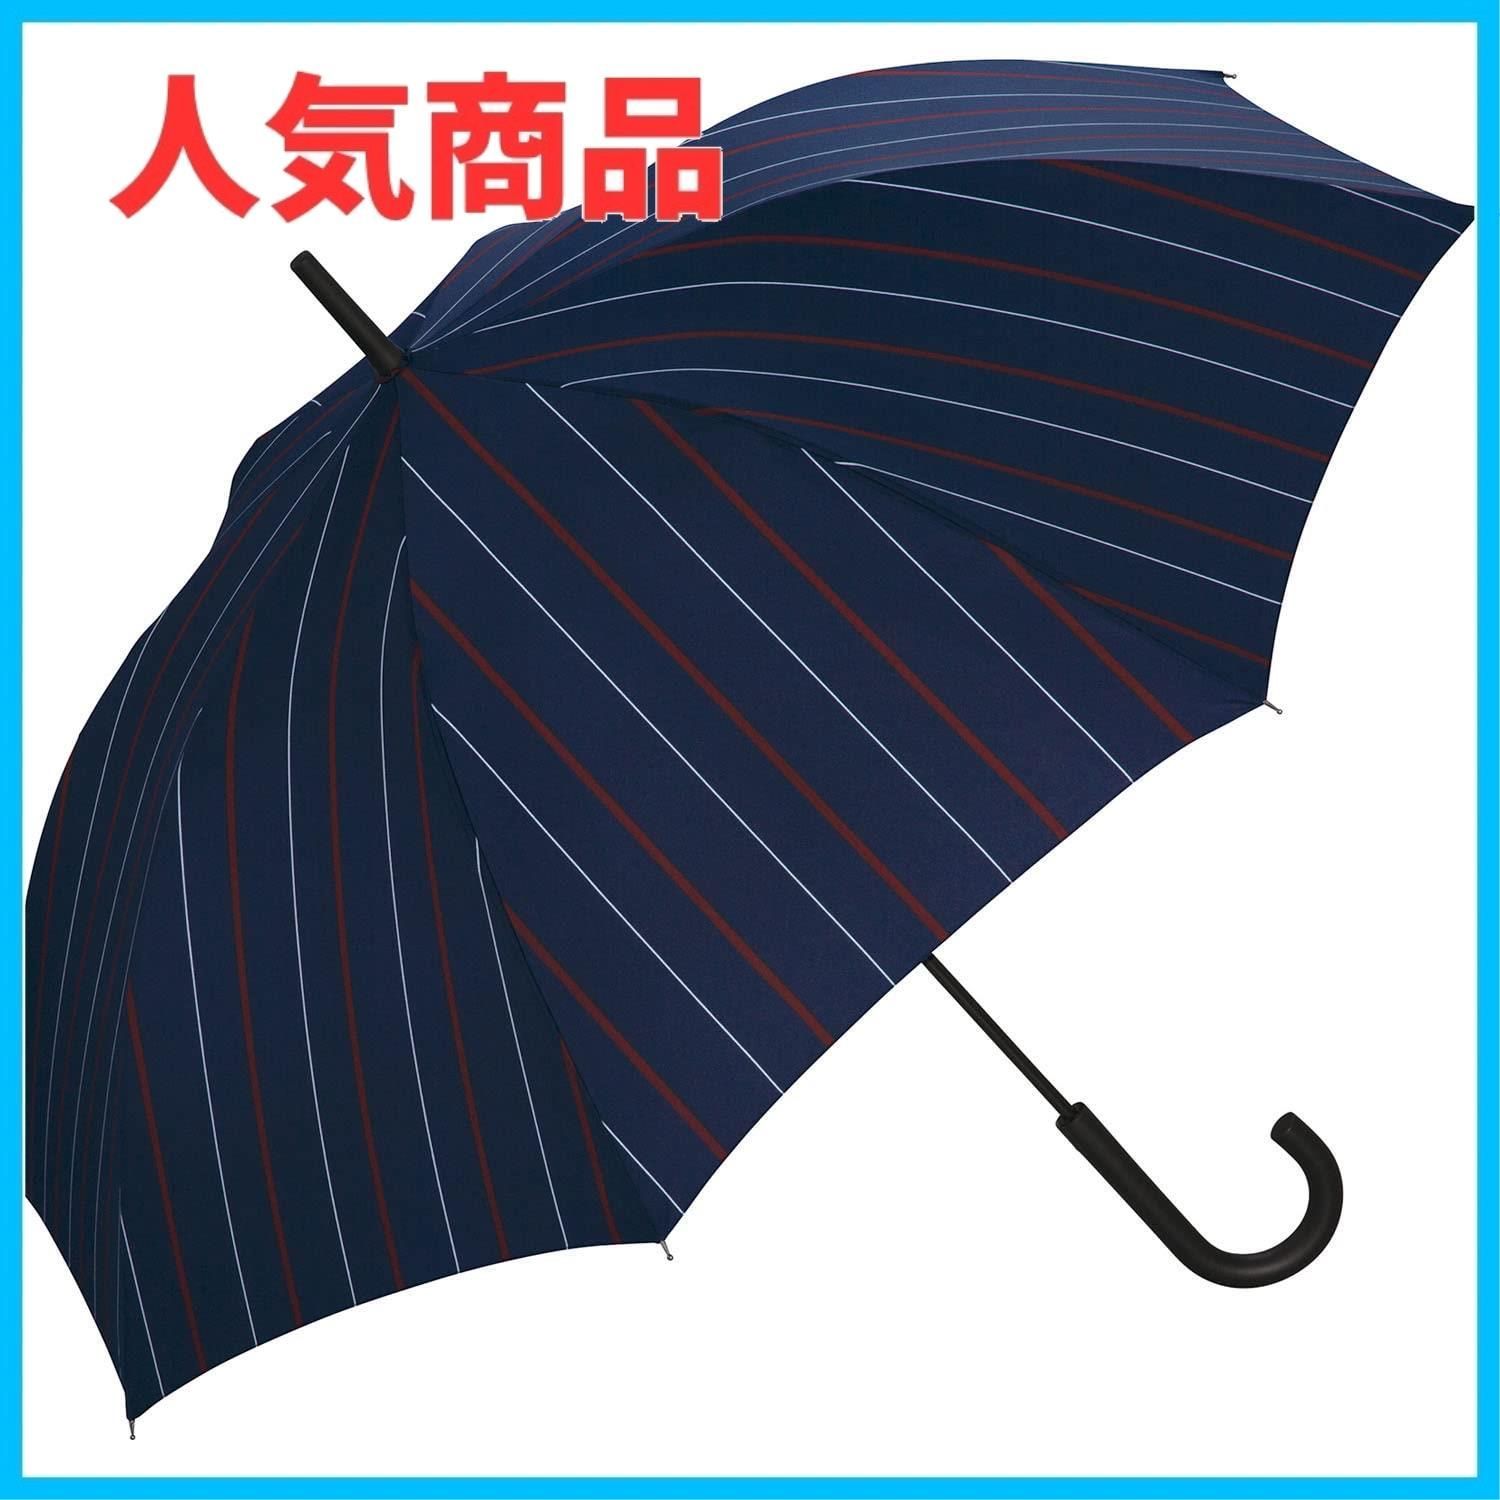 【数量限定】雨傘 UNISEX WIND RESISTANCE 202Wpc. ストライプ 長傘 65cm レディース メンズ 晴雨兼用 大きい 耐風  25m/s 風に強い ユニセックス おしゃれ UX03-041-001